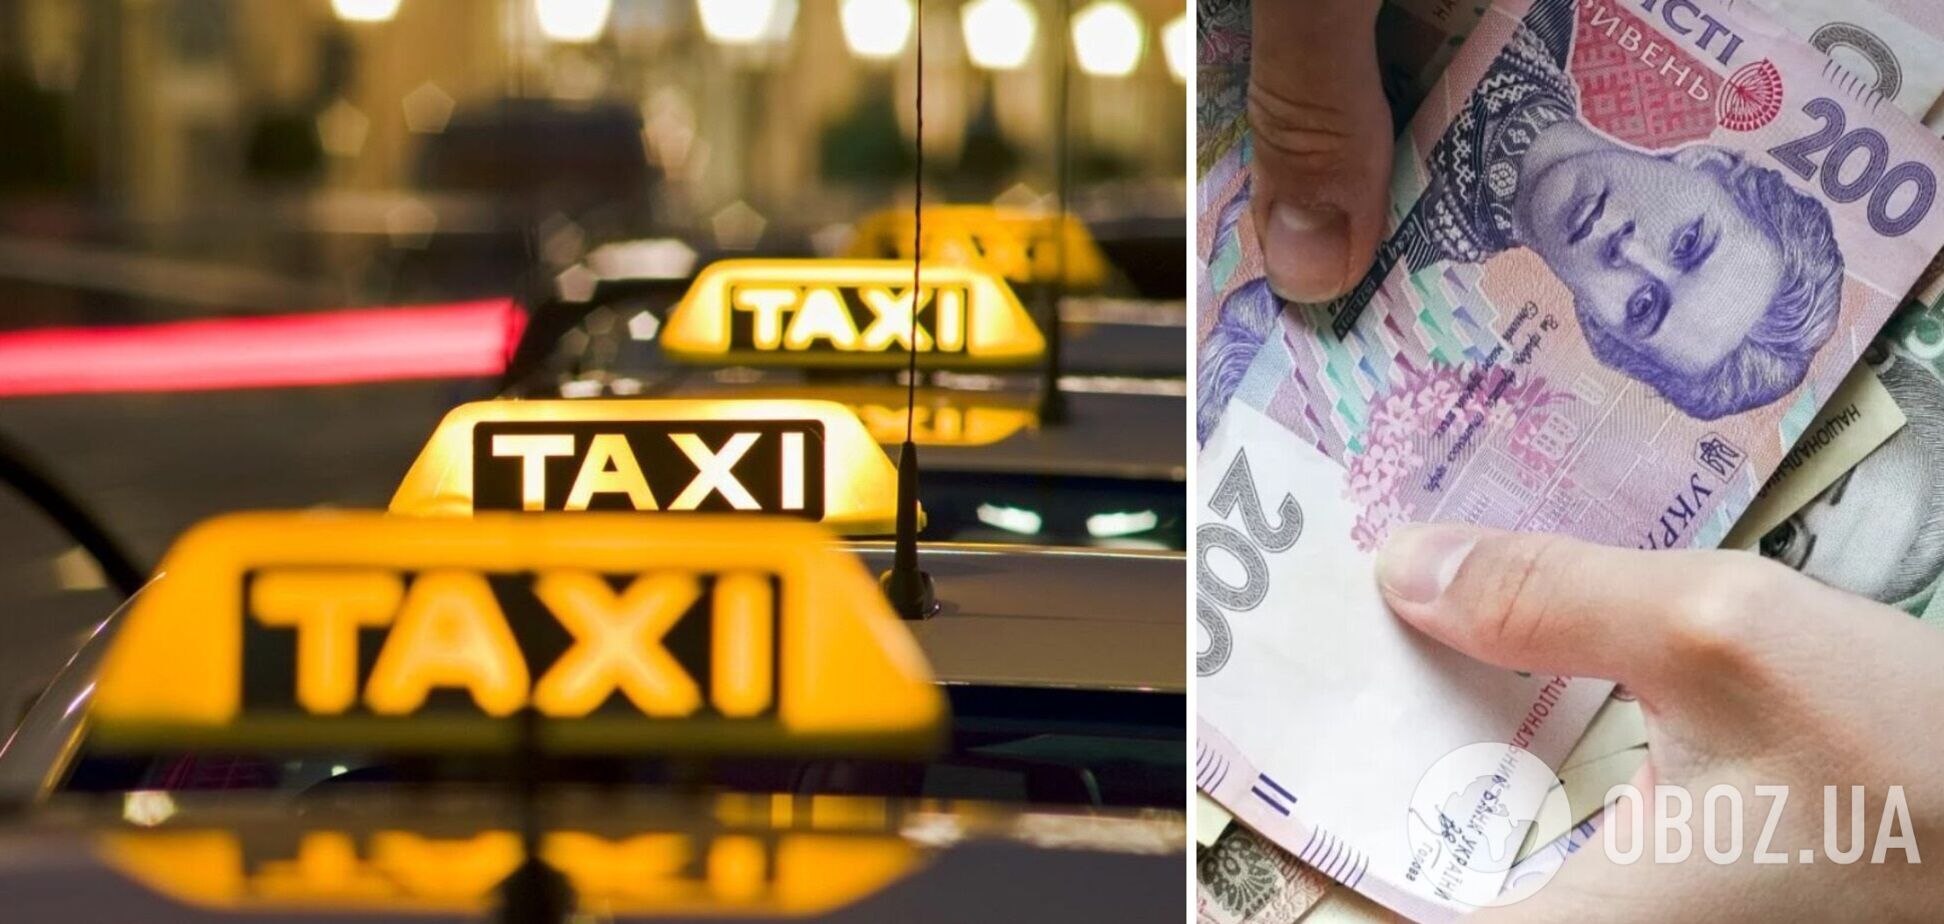 В новогоднюю ночь в Киеве ожидается значительное подорожание проезда в такси